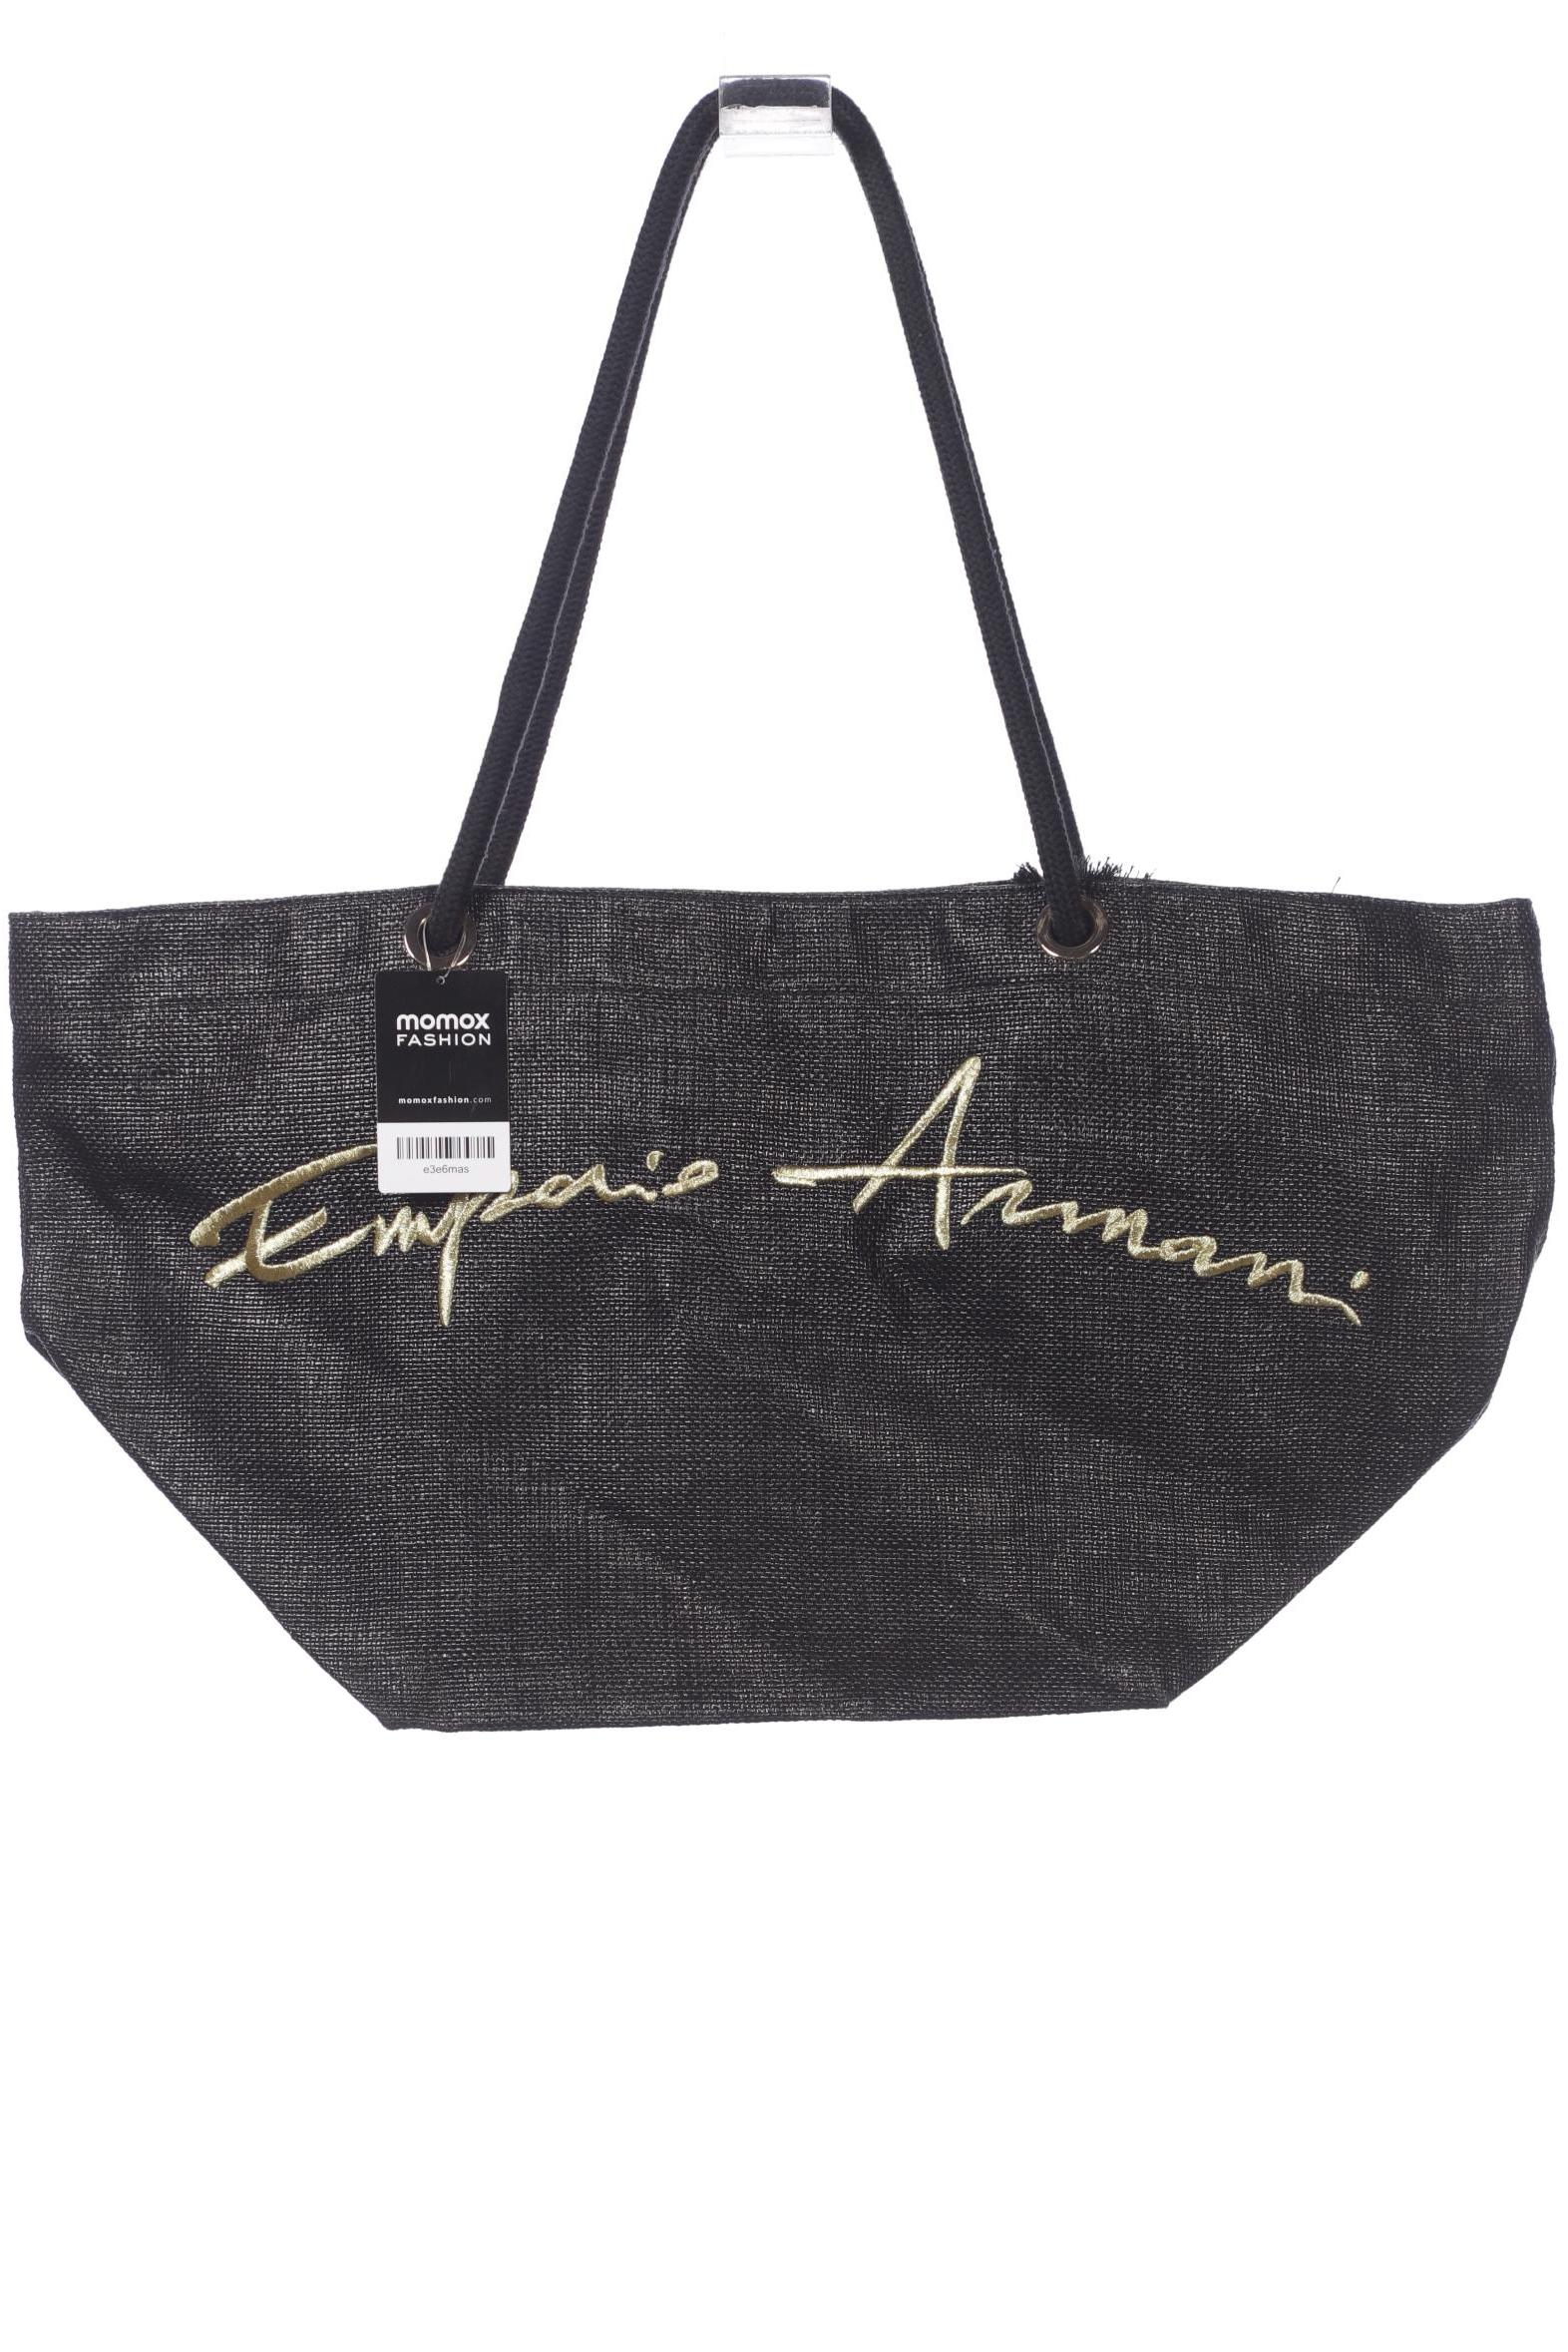 Emporio Armani Damen Handtasche, schwarz von Emporio Armani